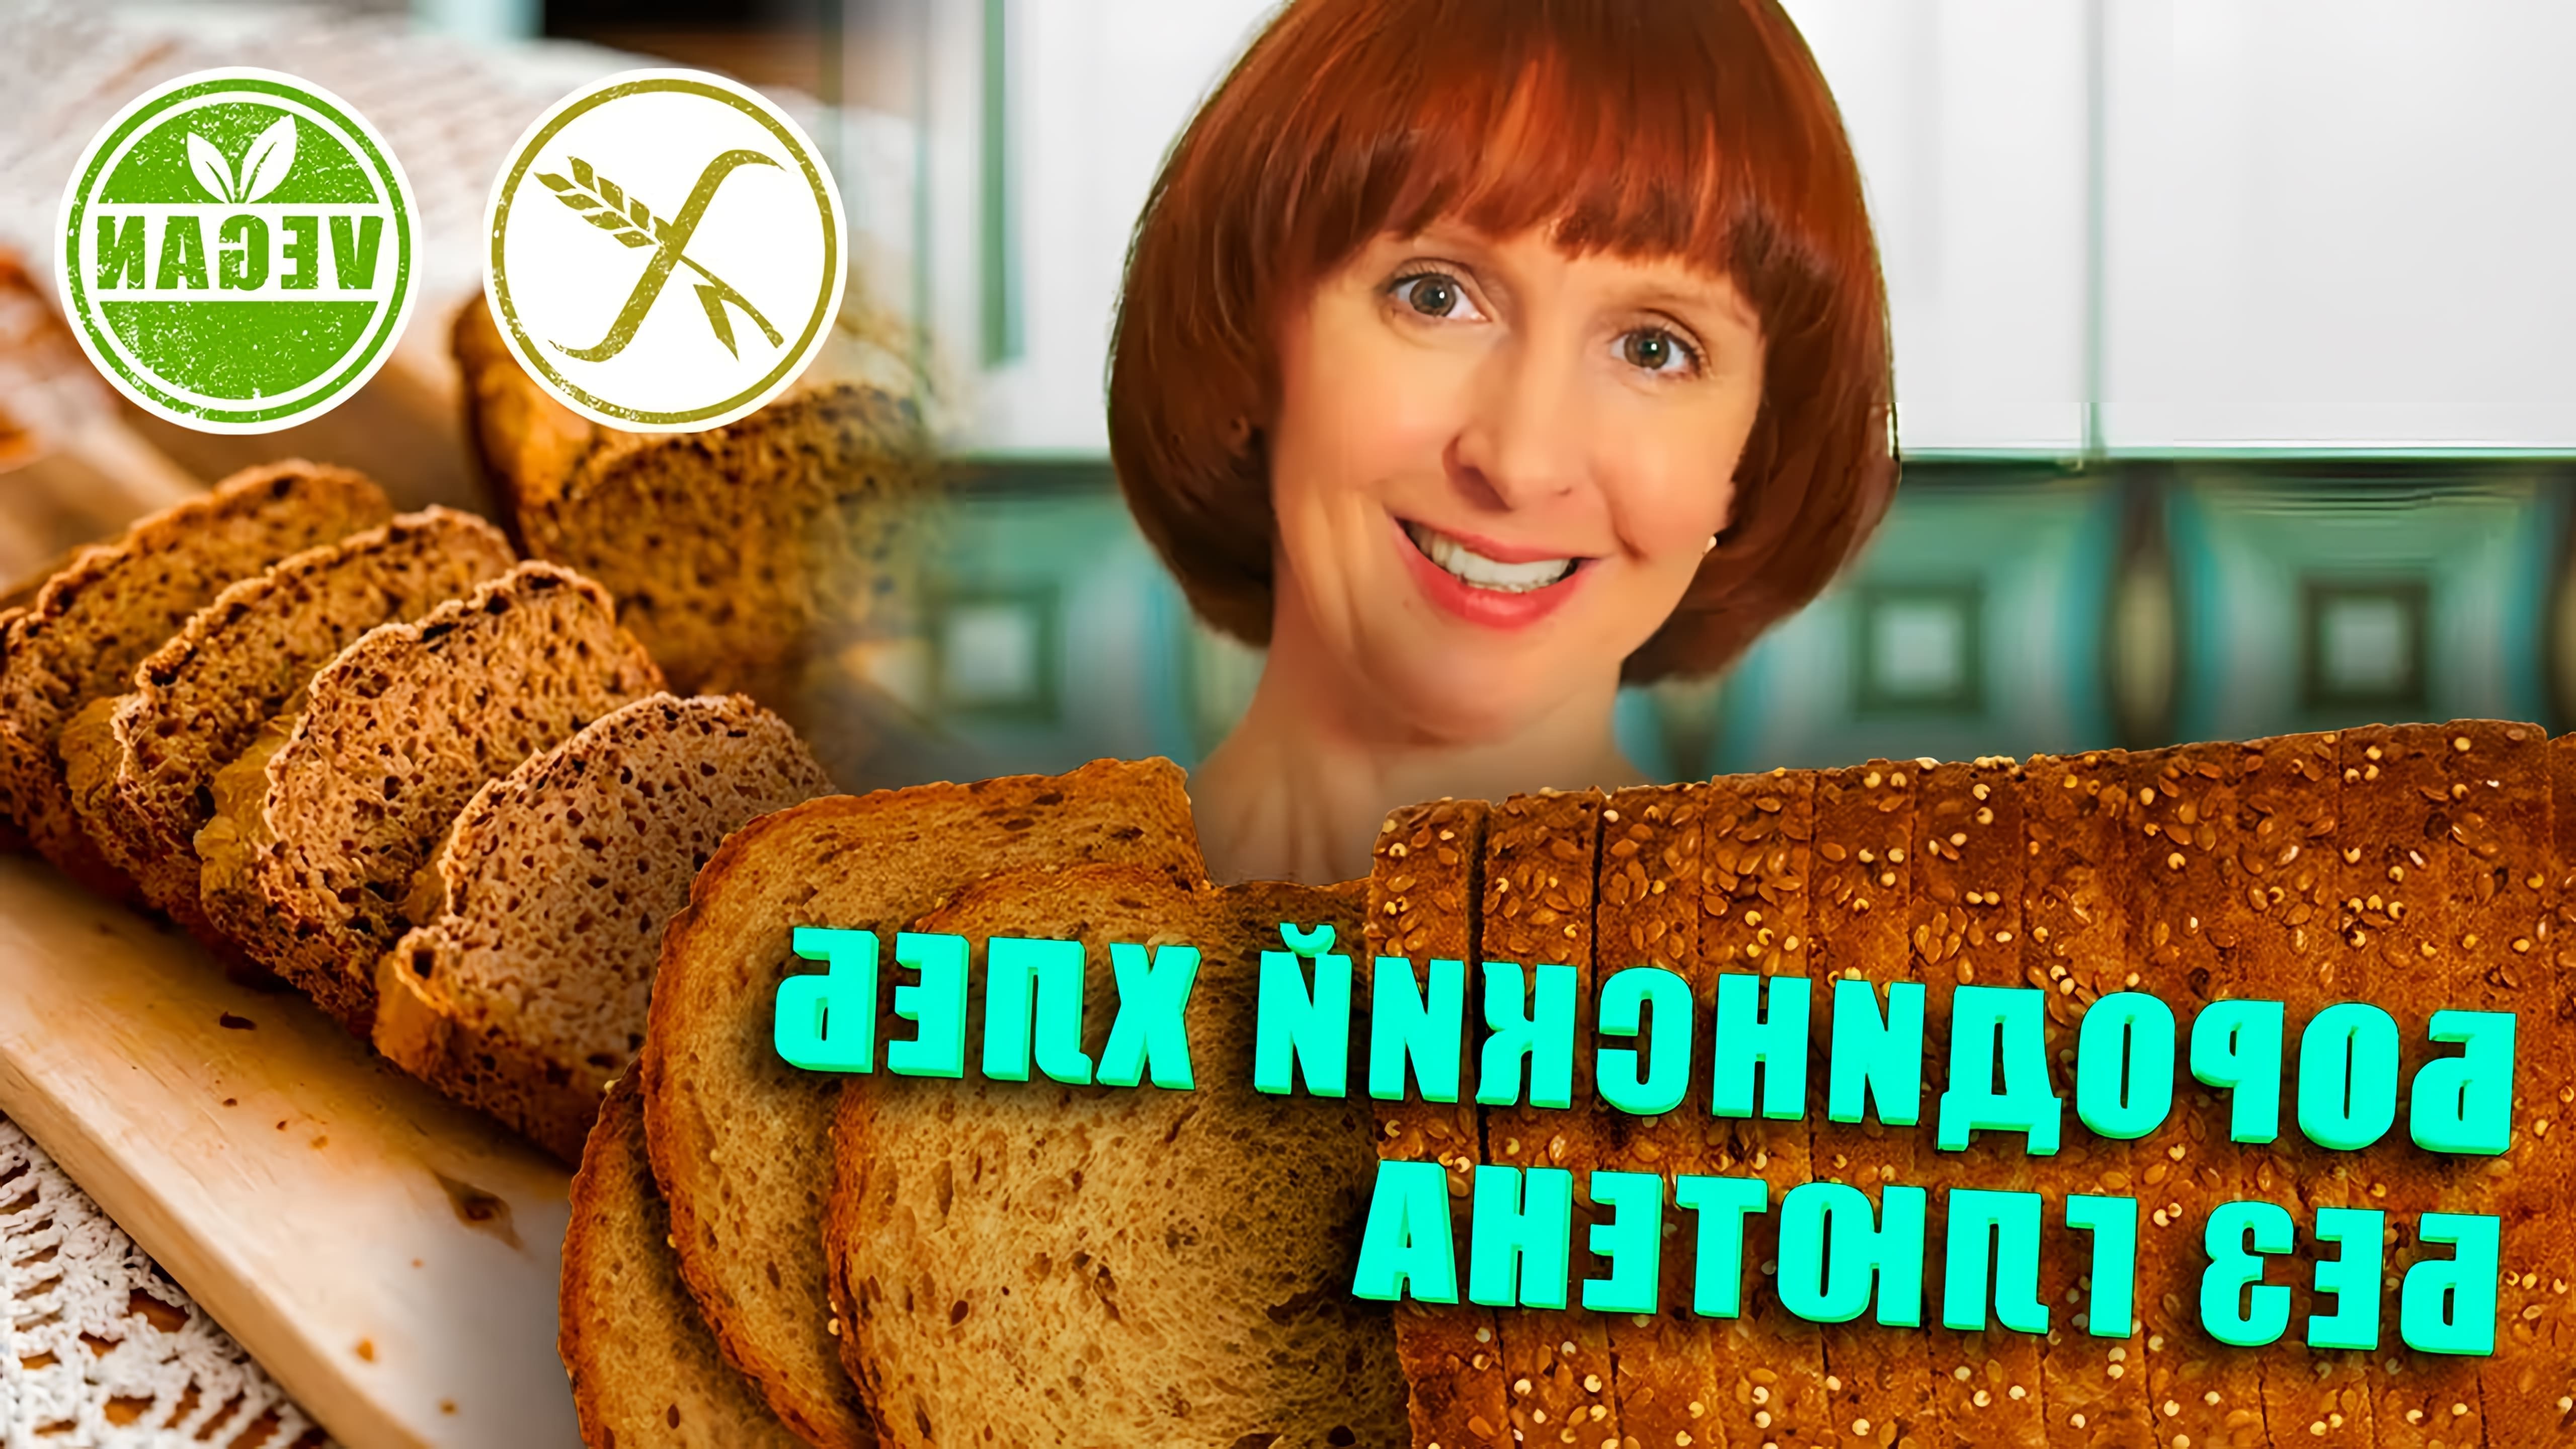 В этом видео рассказывается о приготовлении безглютенового бородинского хлеба